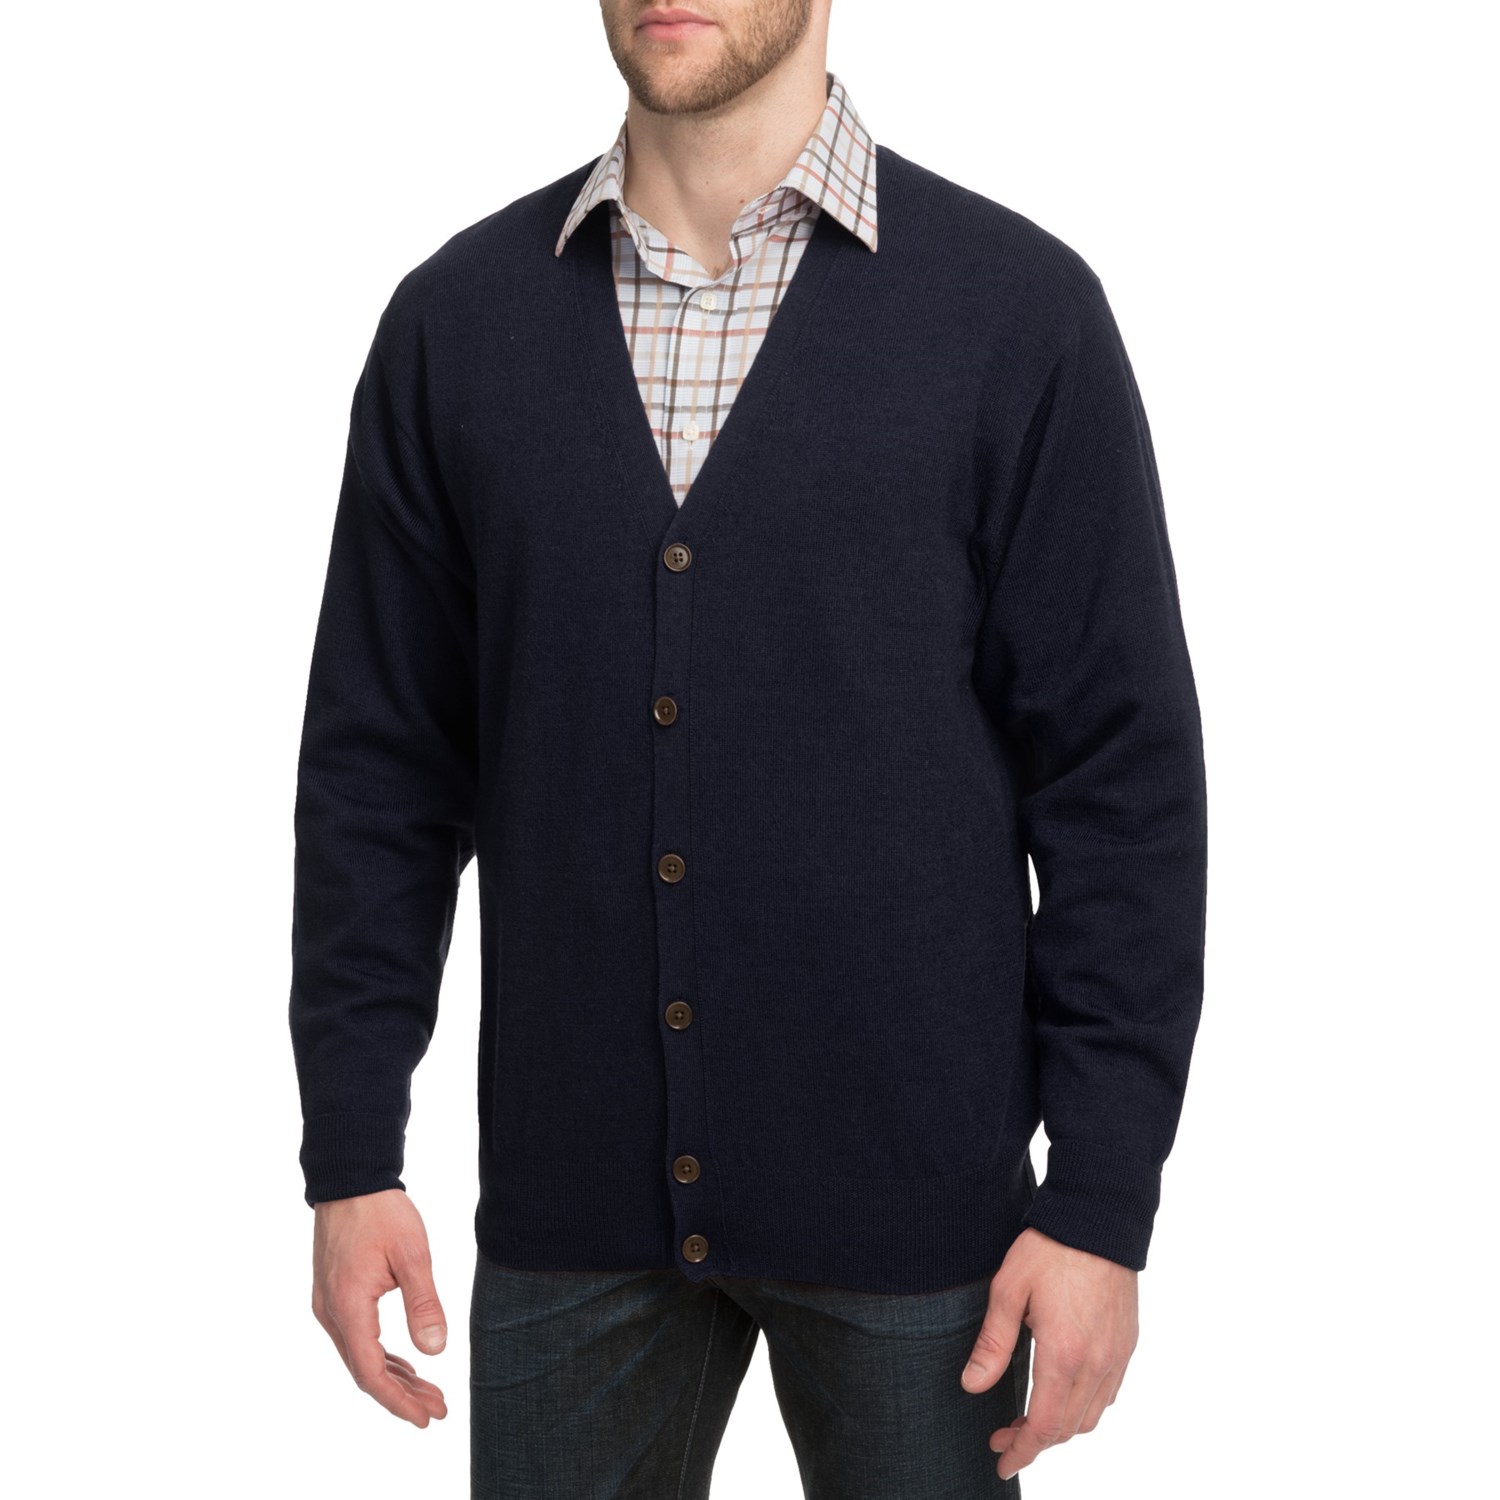 Peter Millar Merino Wool Cardigan Sweater (For Men) 6024D - Save 48%